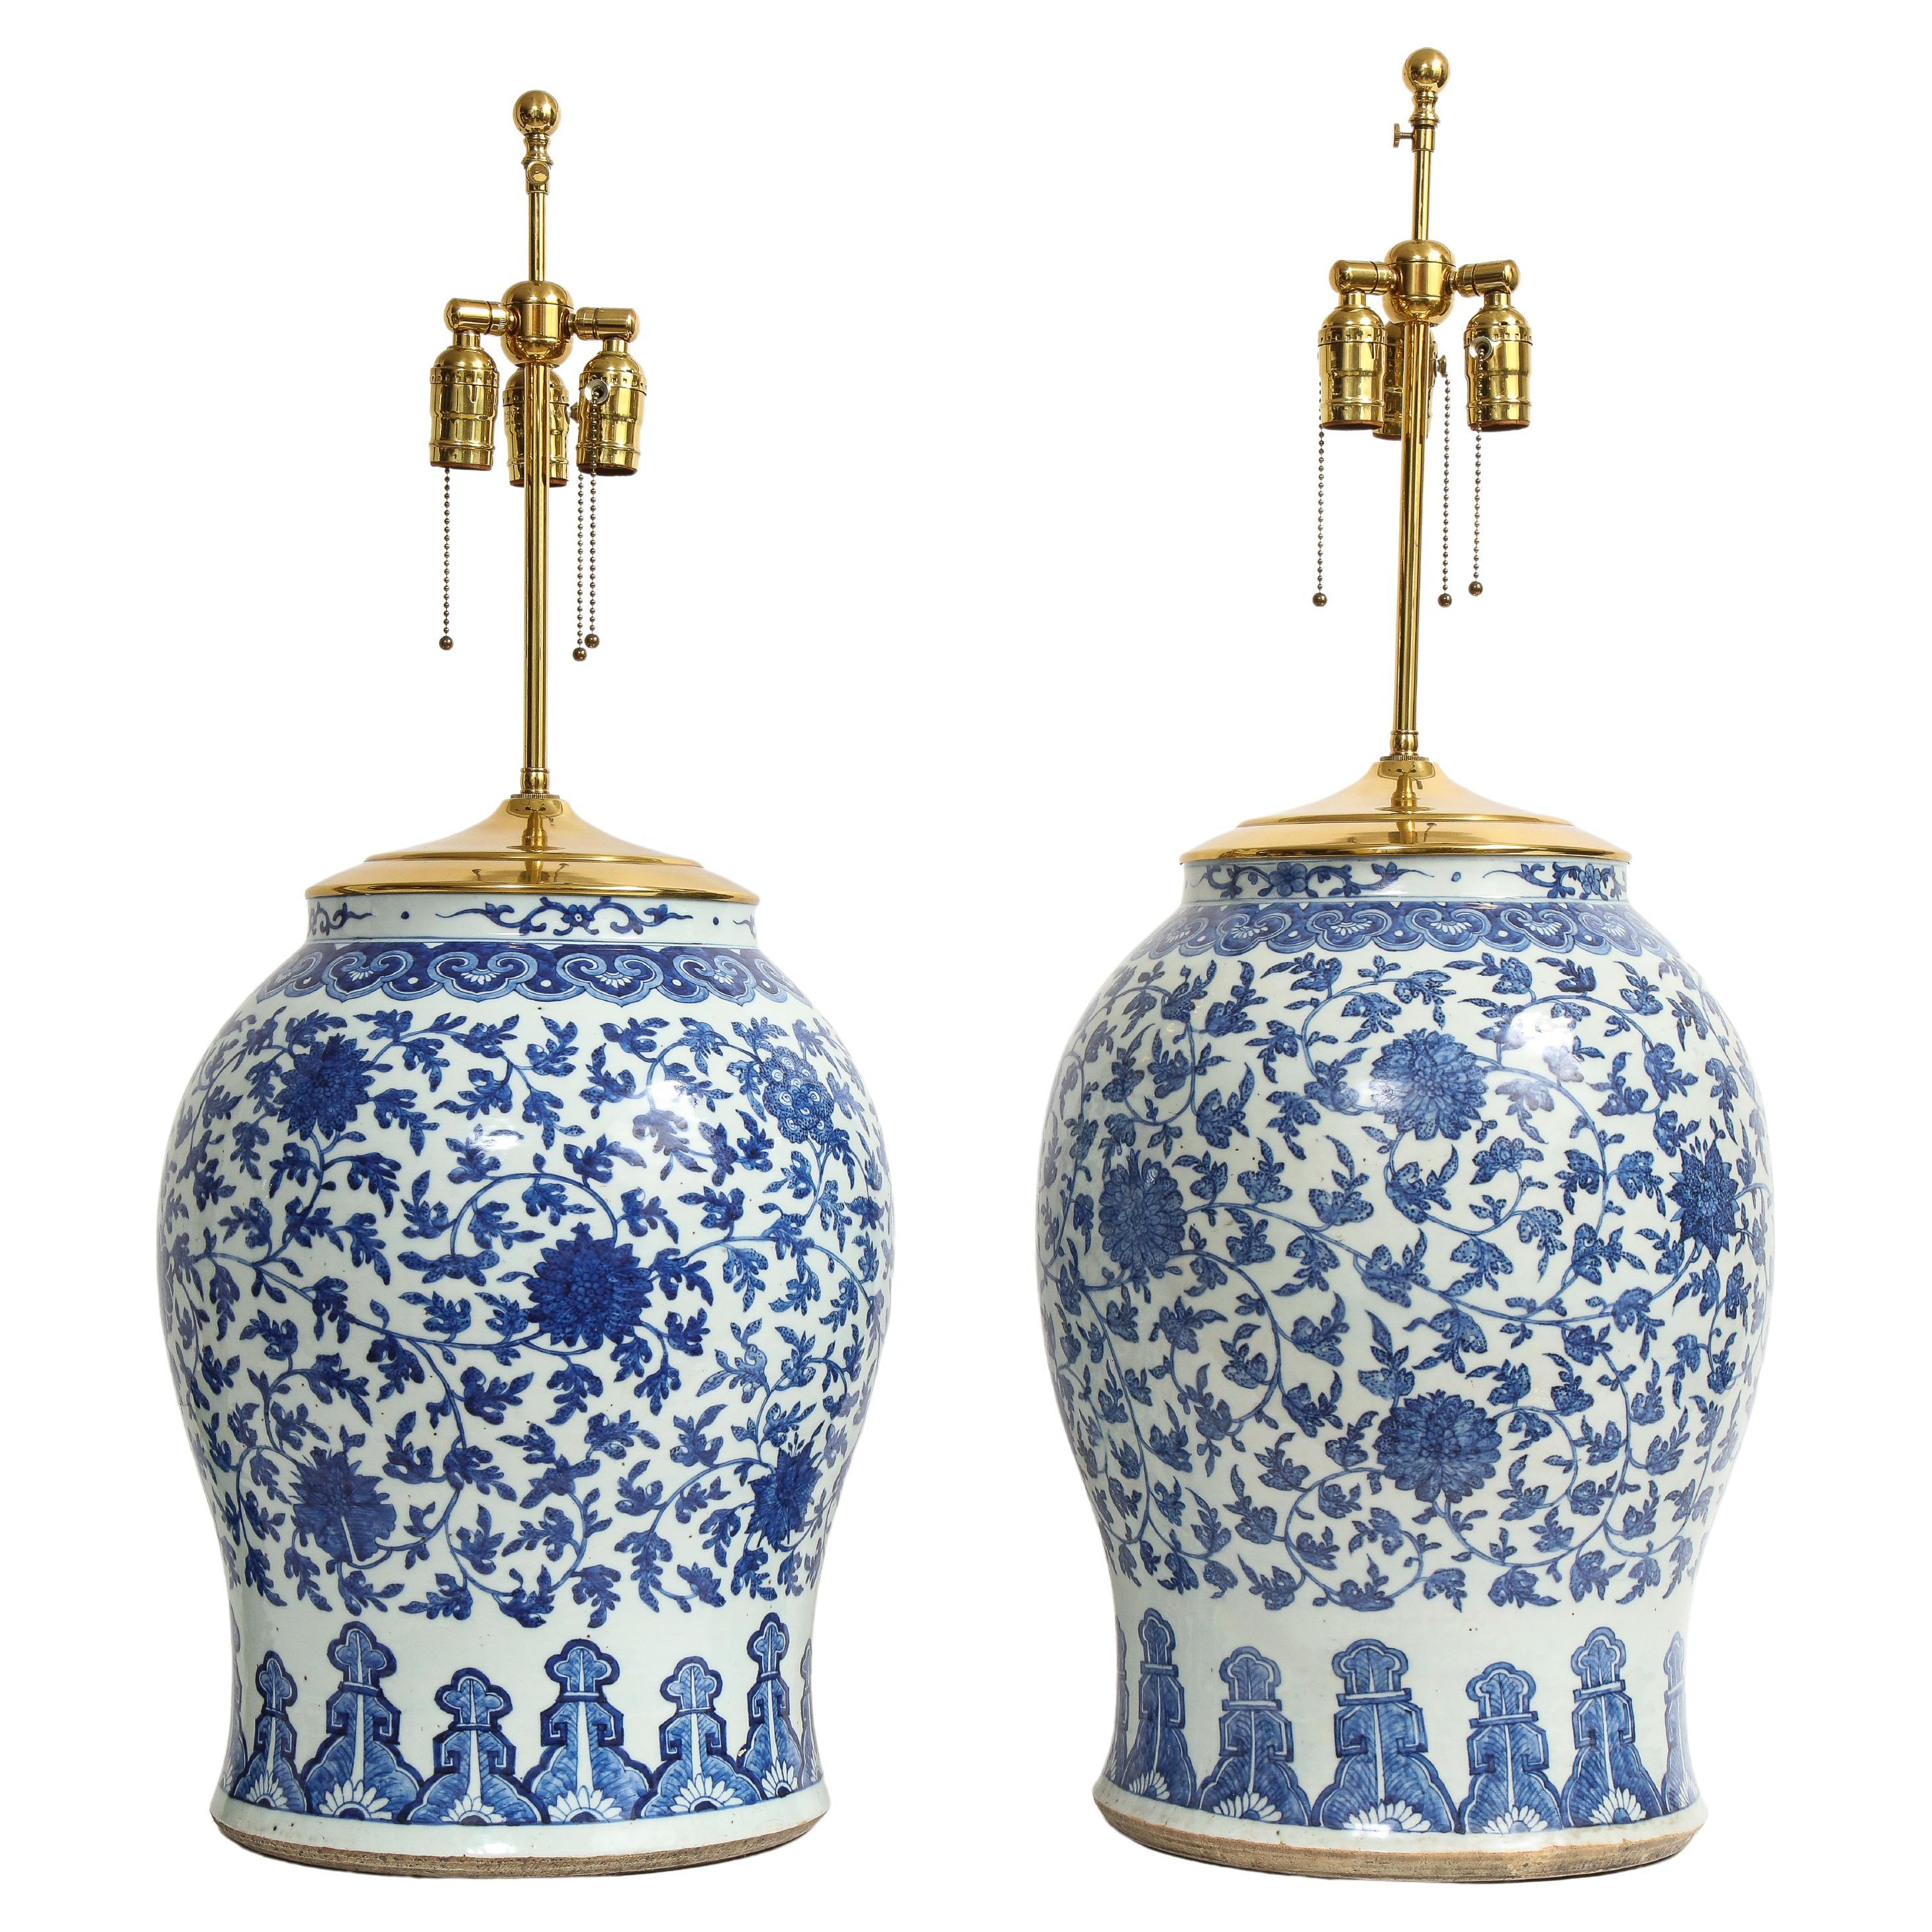 Paar chinesische blau-weiße Vasen aus der Qing-Dynastie des 19. Jahrhunderts, auf Lampen umgewandelt